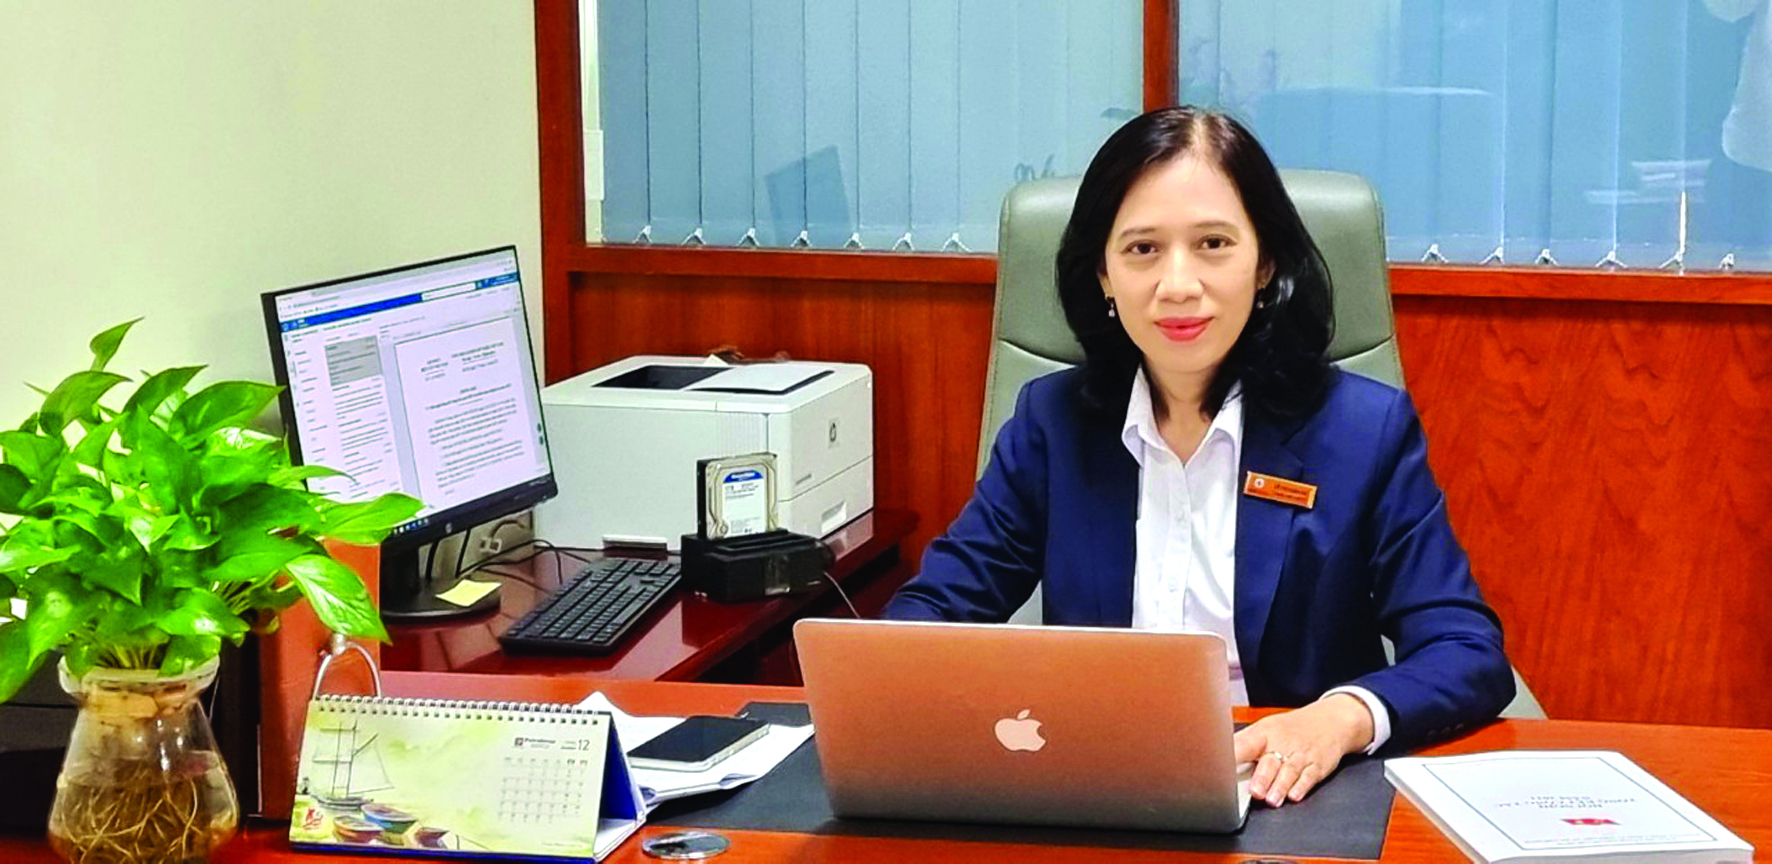 Chị Đỗ Thị Xuân Chi, thành viên Hội đồng thành viên  Tổng Công ty Điện lực TP.HCM